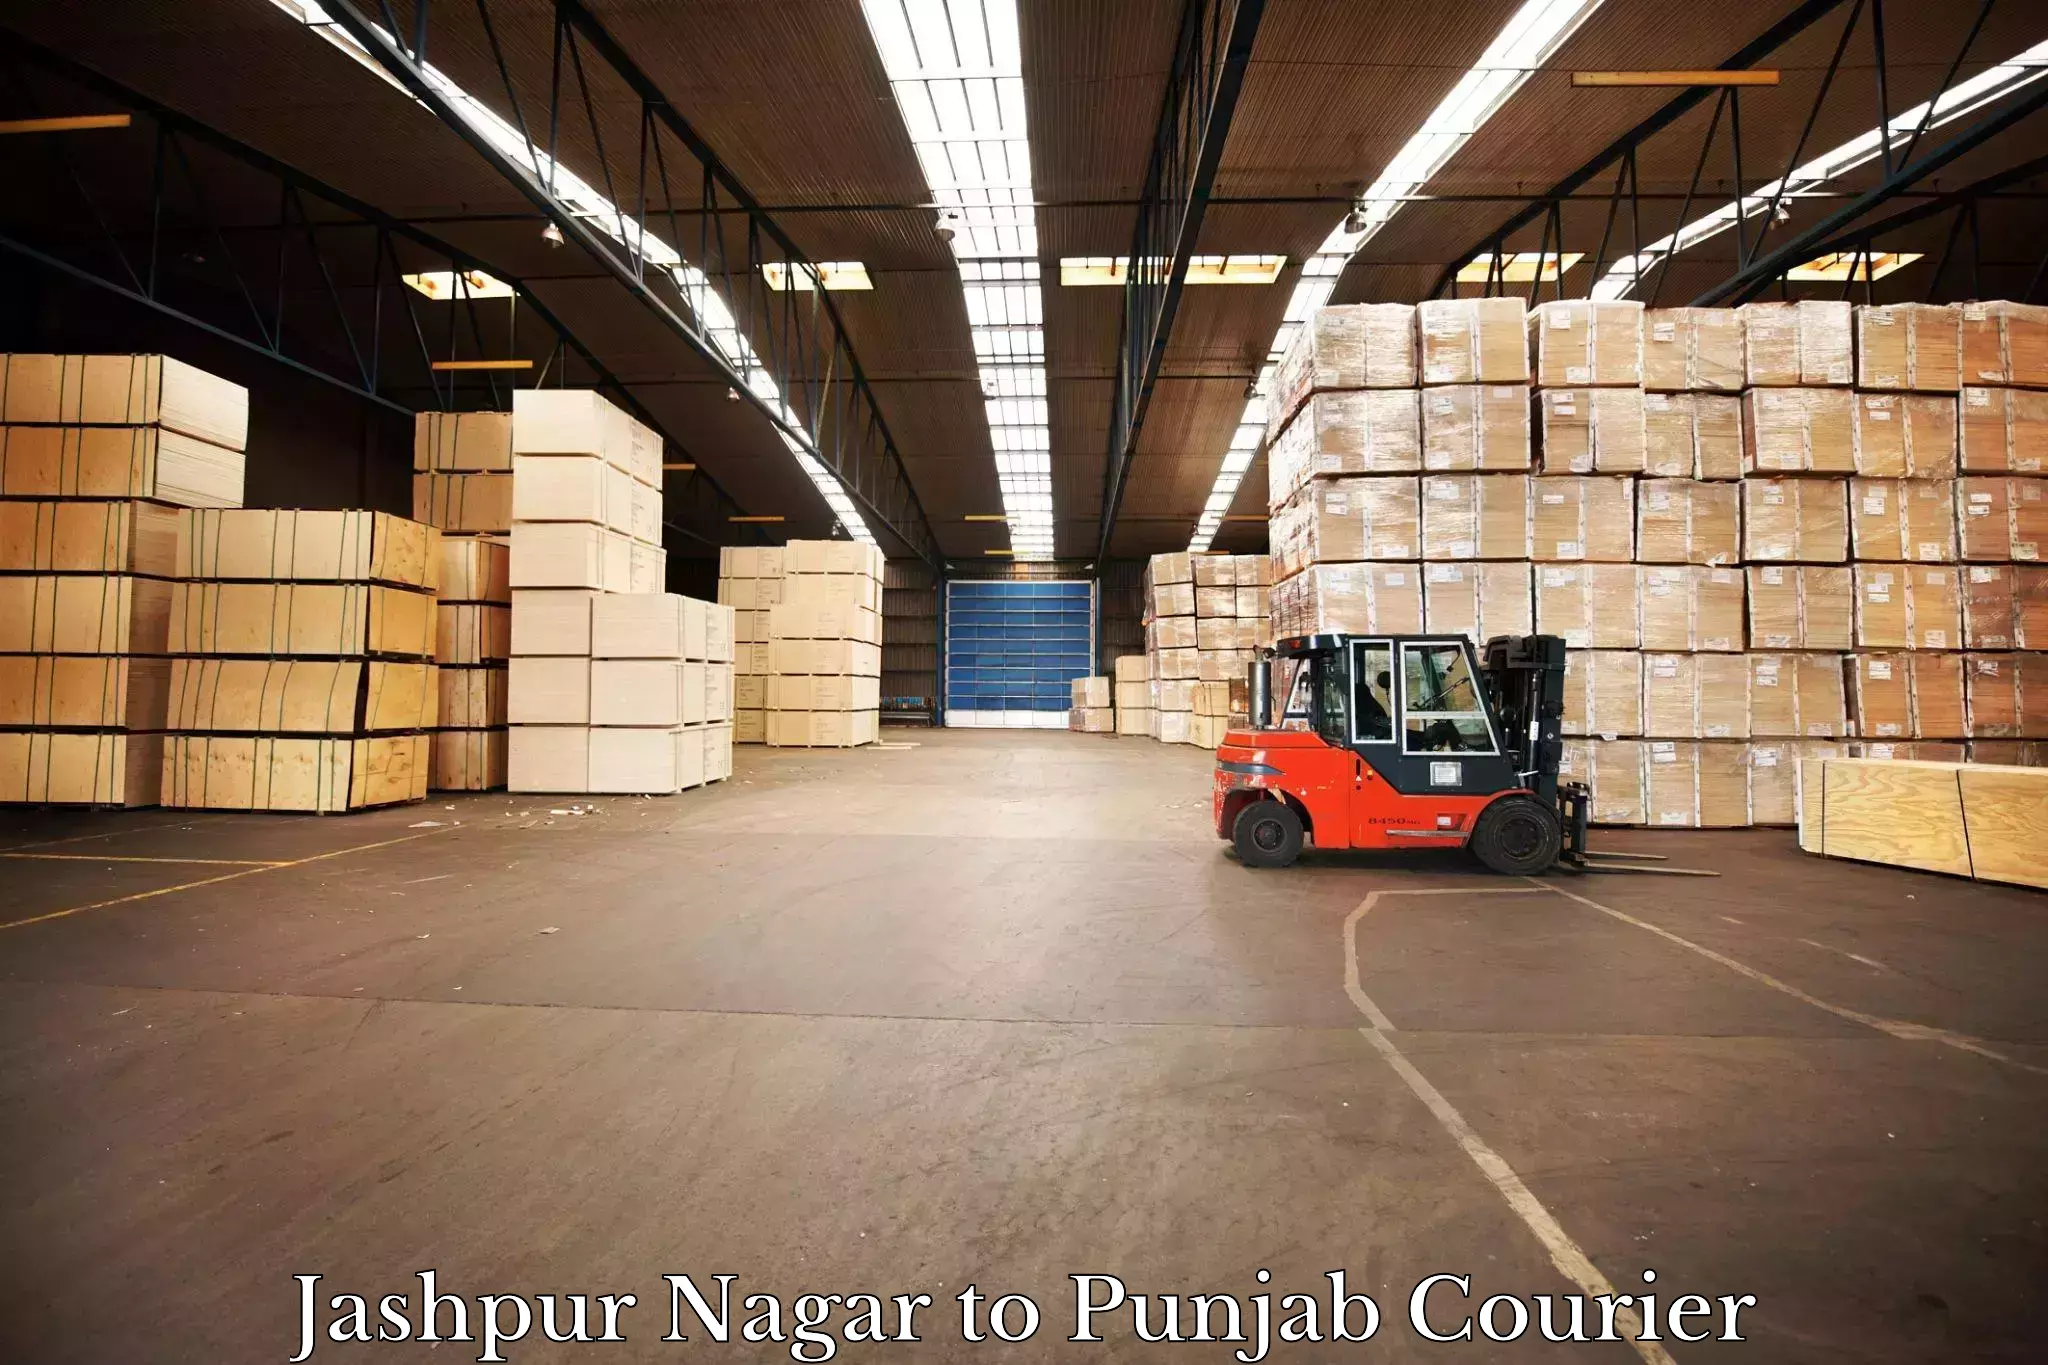 Expedited shipping methods Jashpur Nagar to Central University of Punjab Bathinda